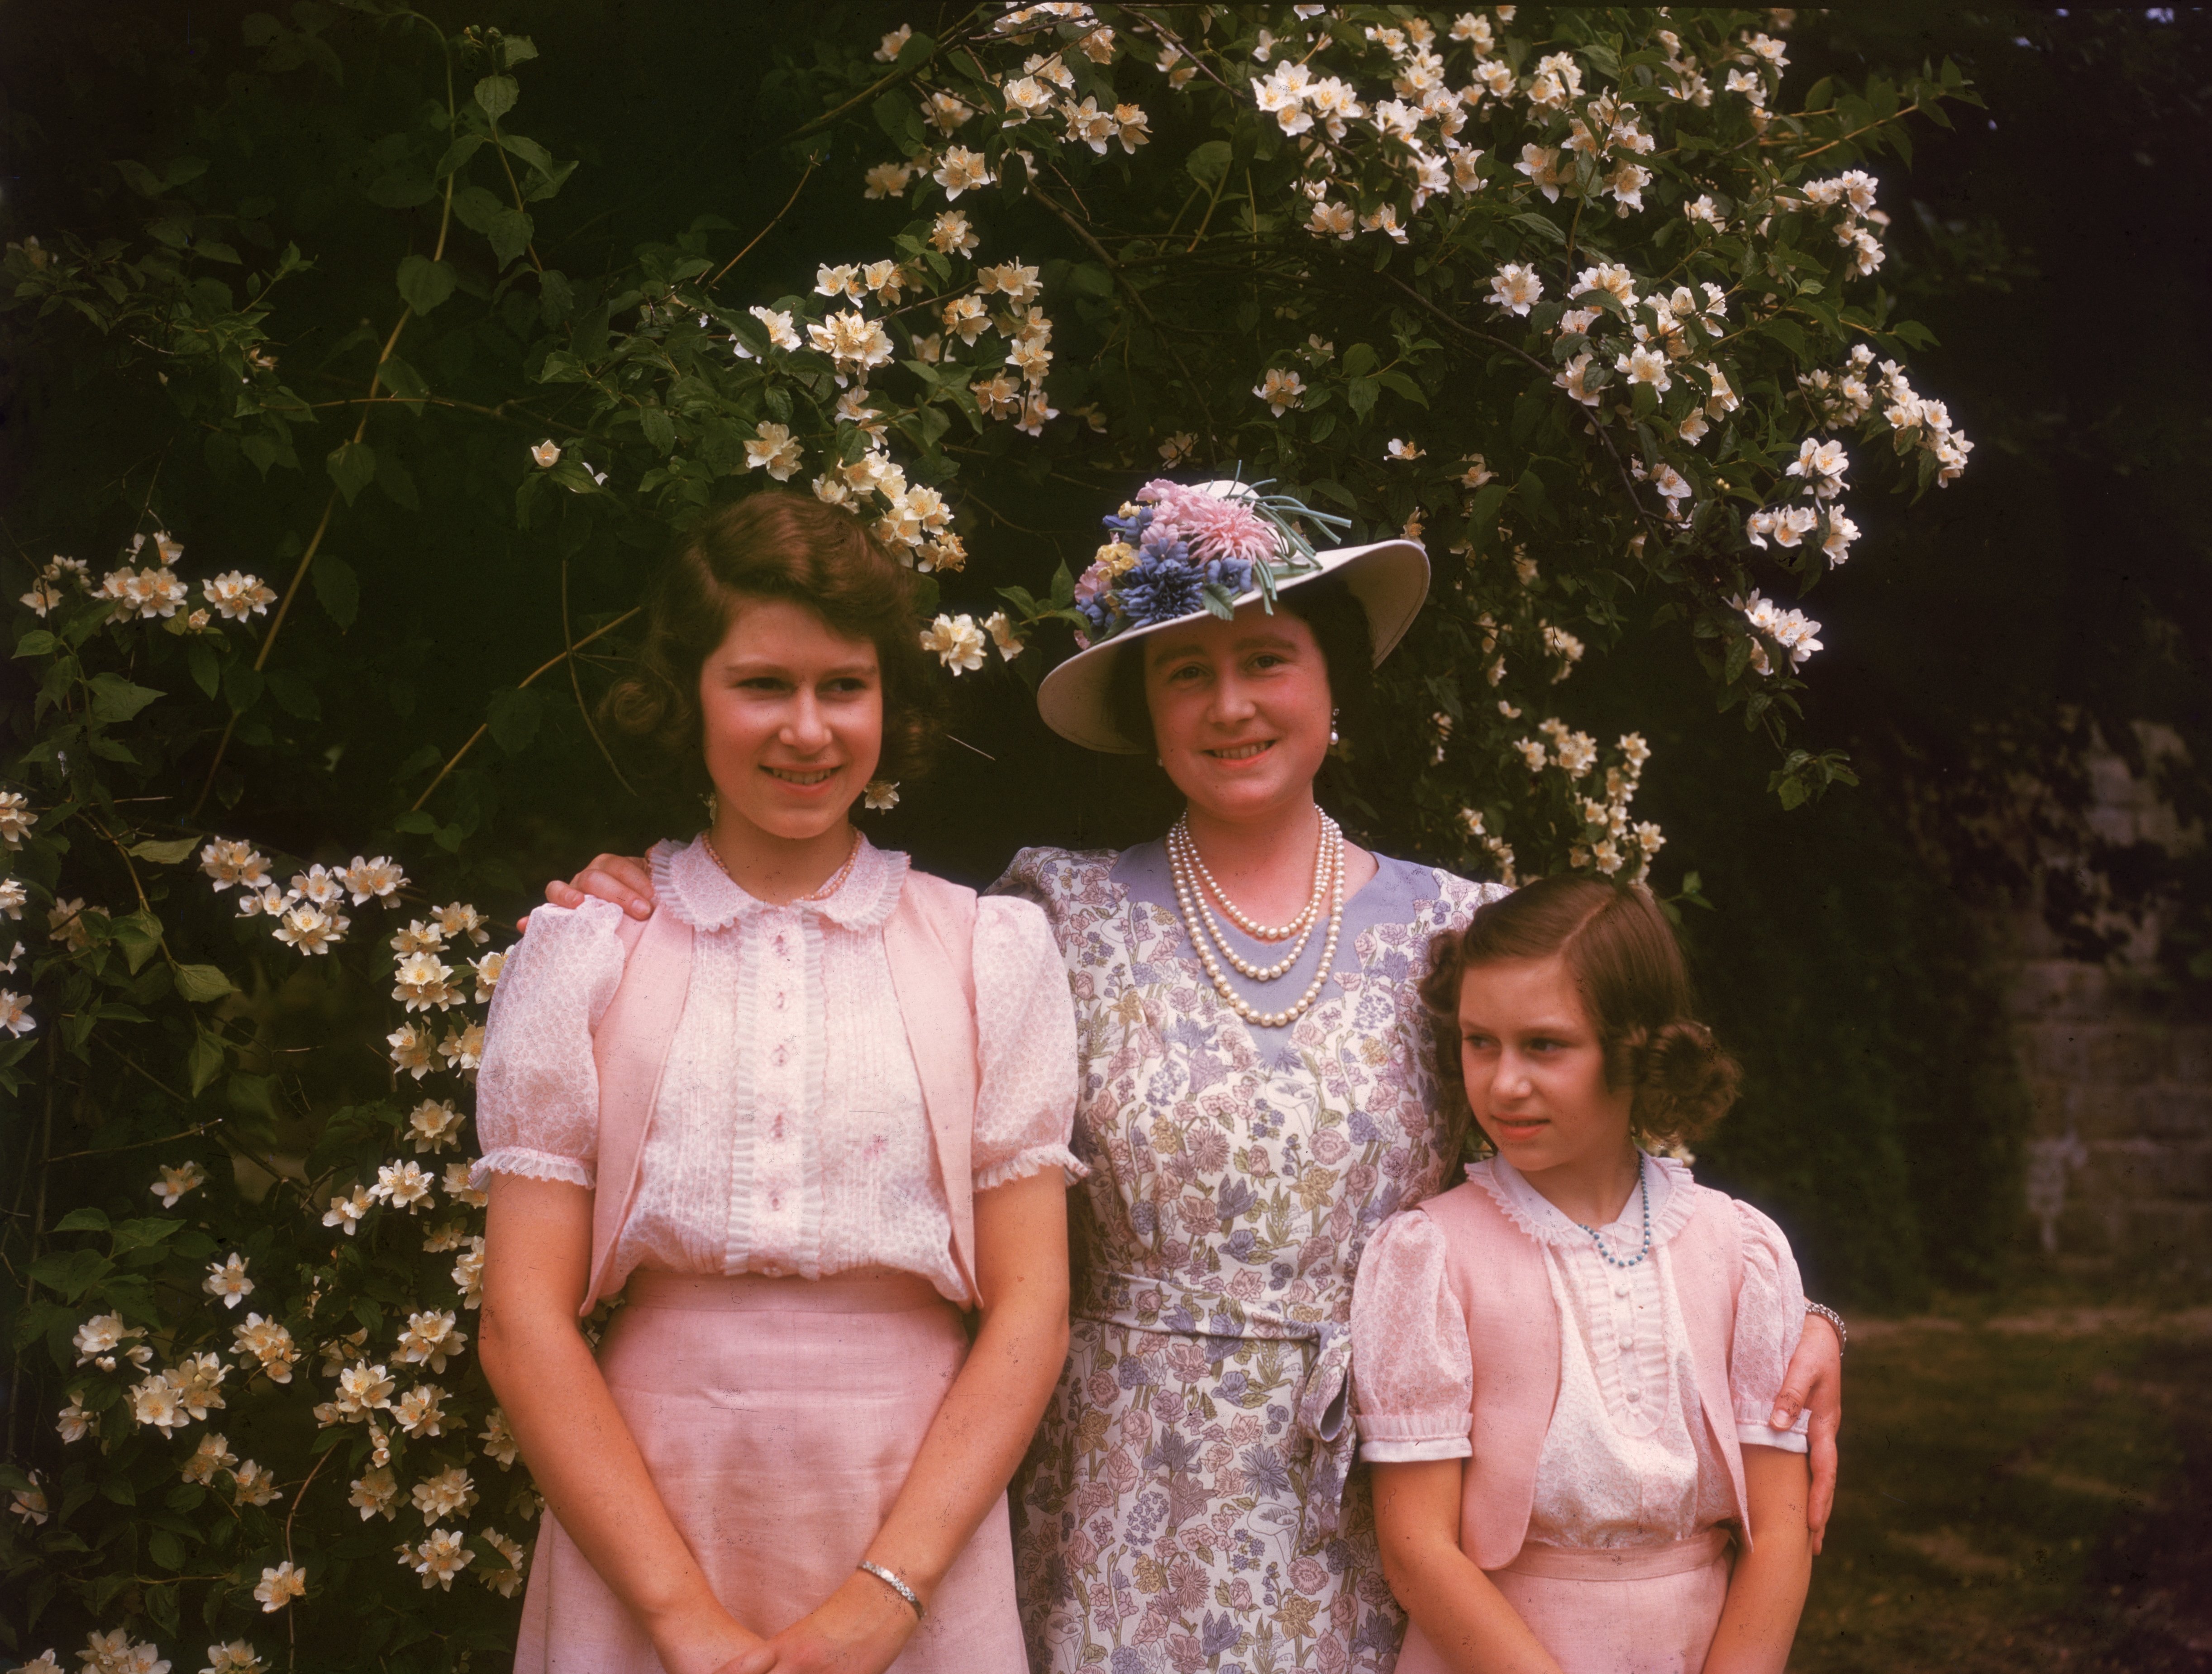 Königin Elizabeth mit ihren Töchtern Prinzessin Elizabeth und Prinzessin Margaret auf dem Gelände von Schloss Windsor, Berkshire, am 8. Juli 1941 | Quelle: Getty Images